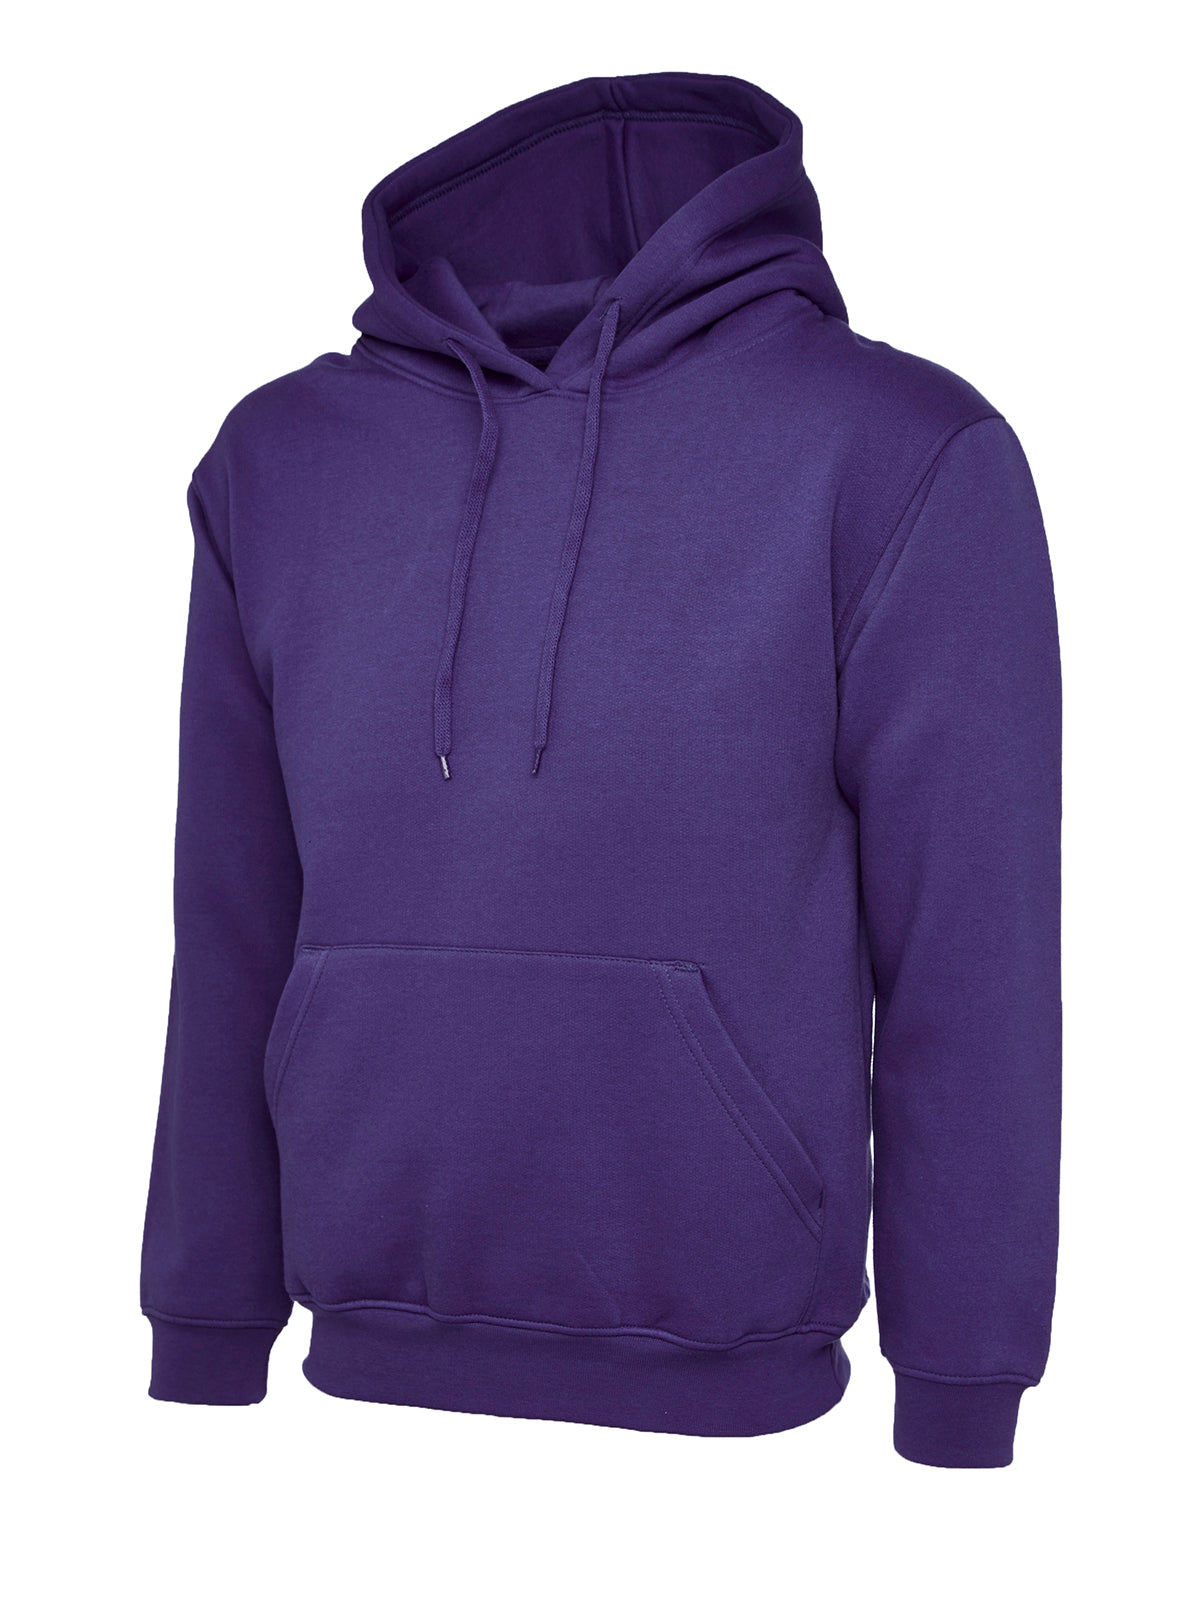 ladies_deluxe_hooded_sweatshirt_purple